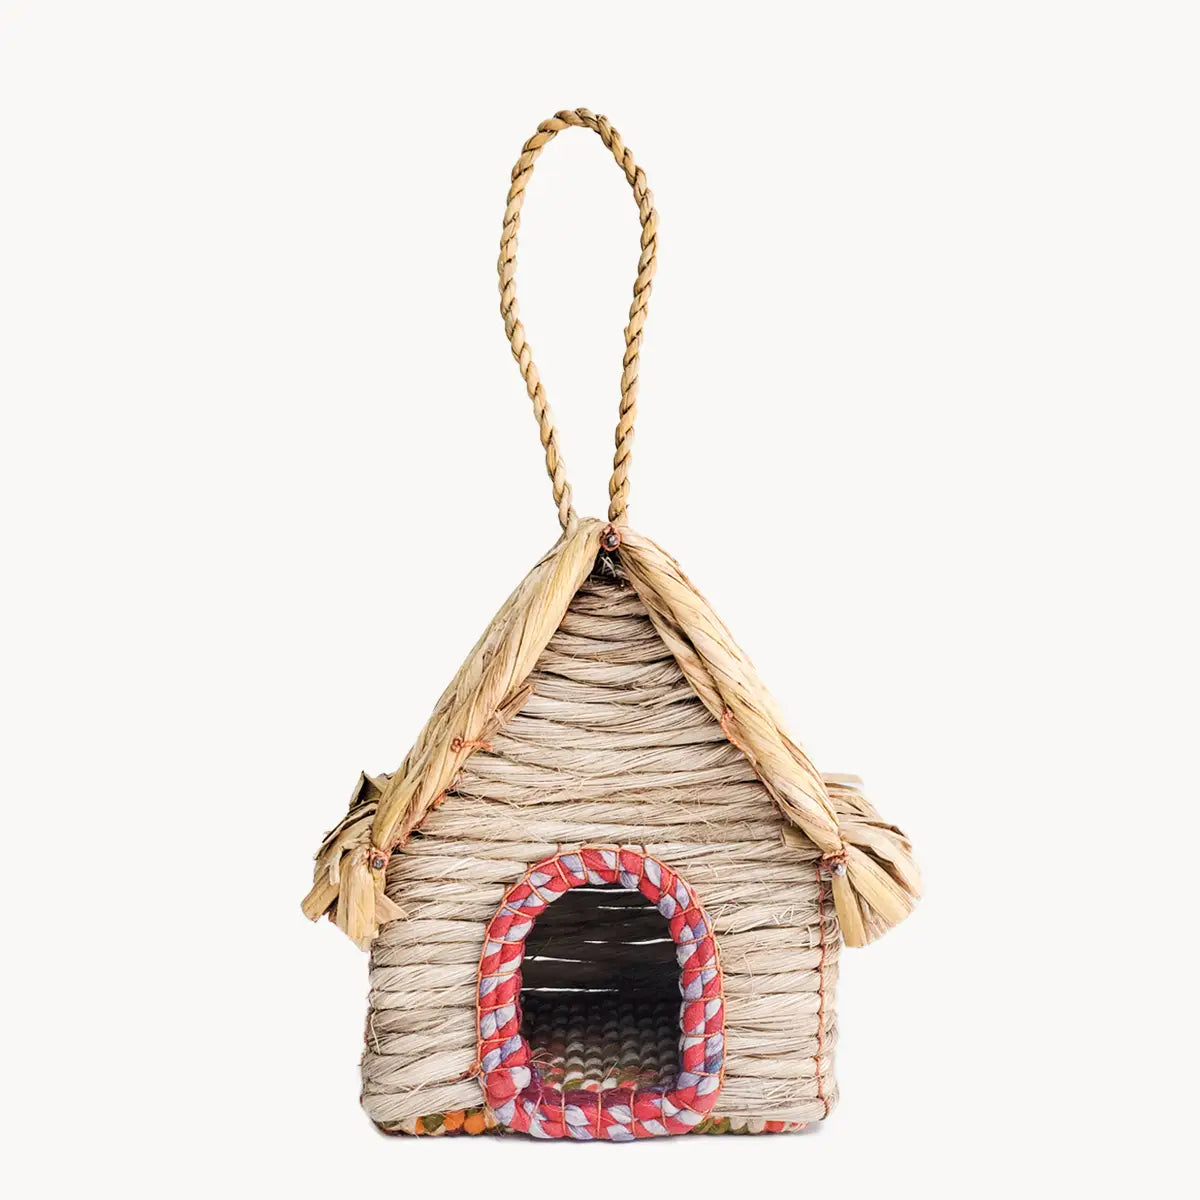 Handwoven Seagrass Birdhouse - Cabin